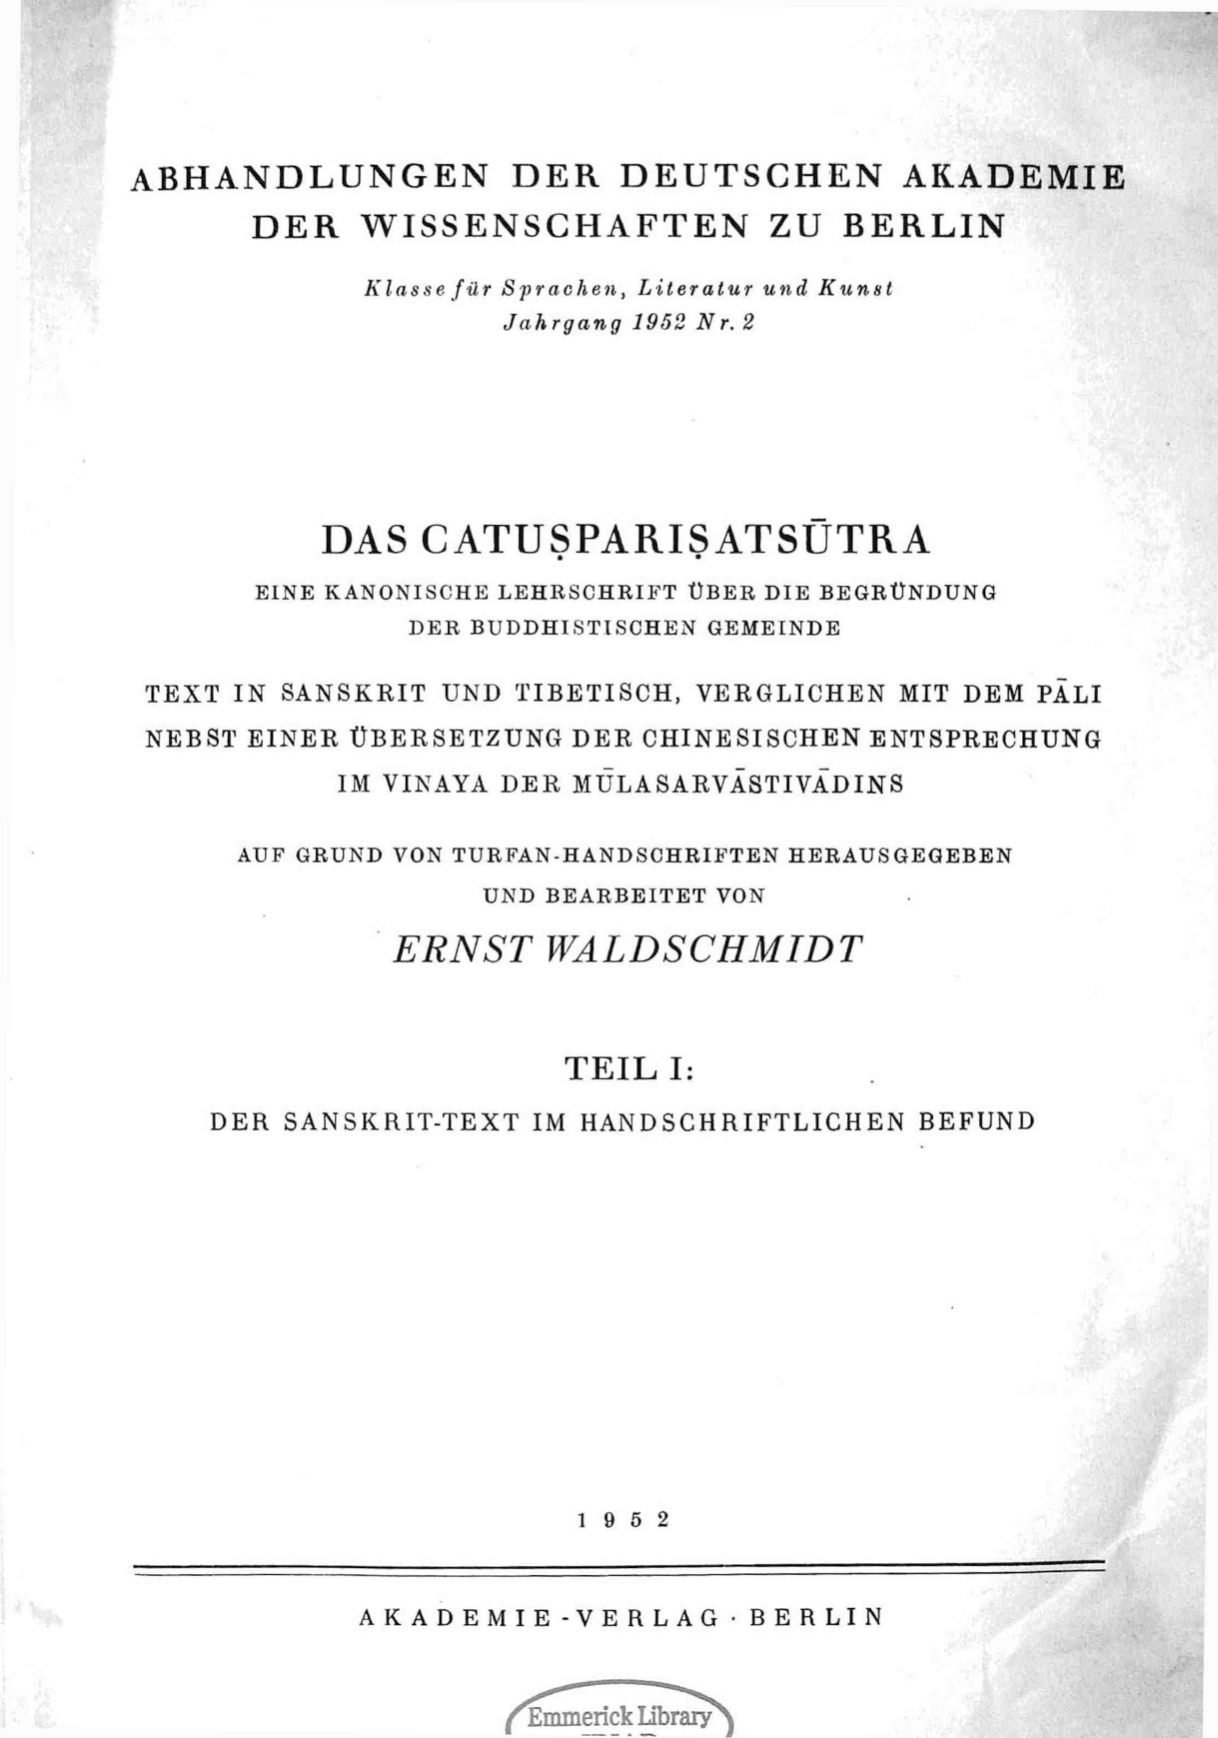 Das Catusparisatsutra Vol. 1-front.jpg